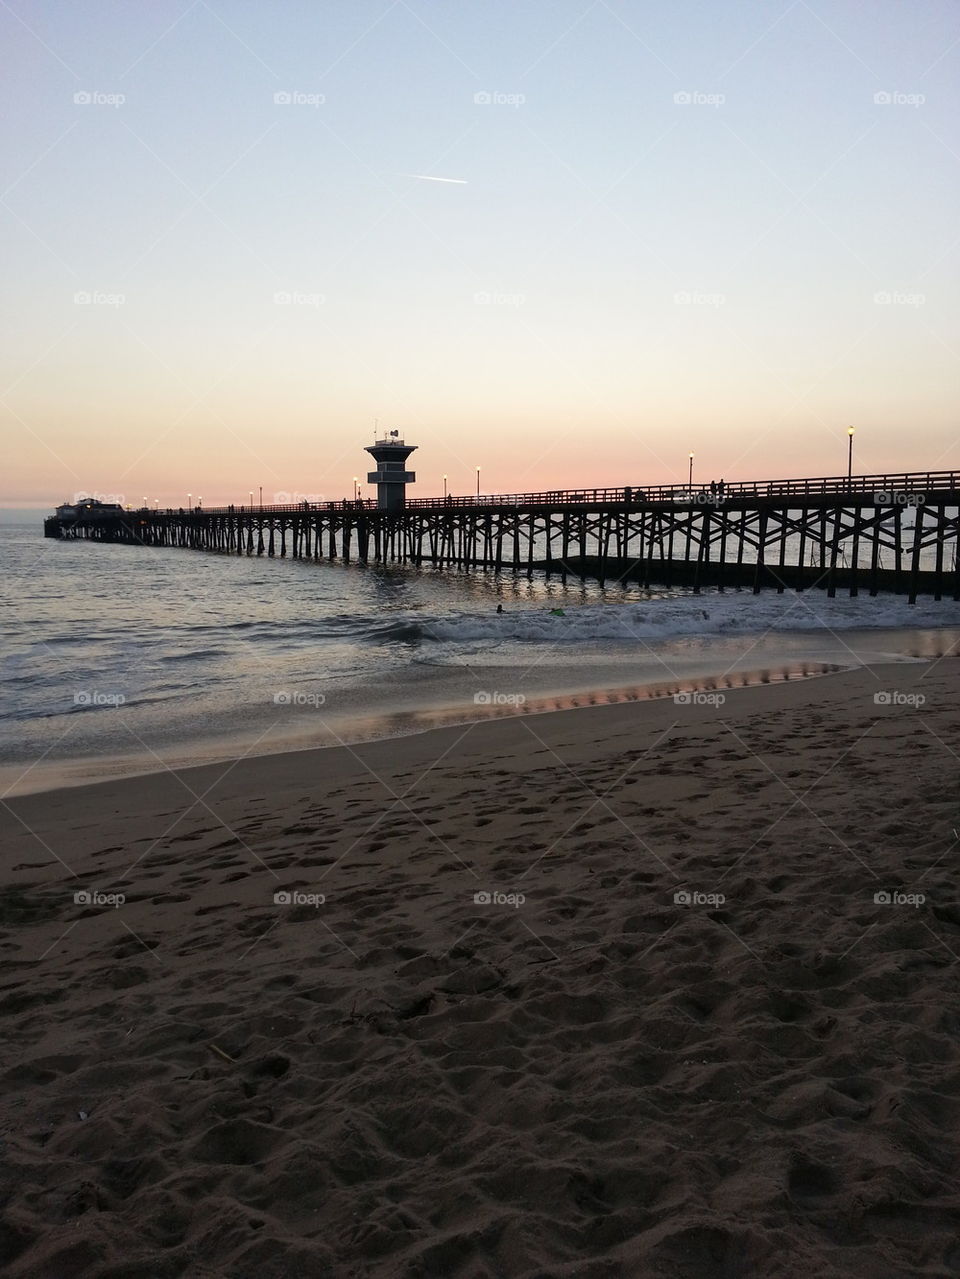 Seal Beach CA. Pier